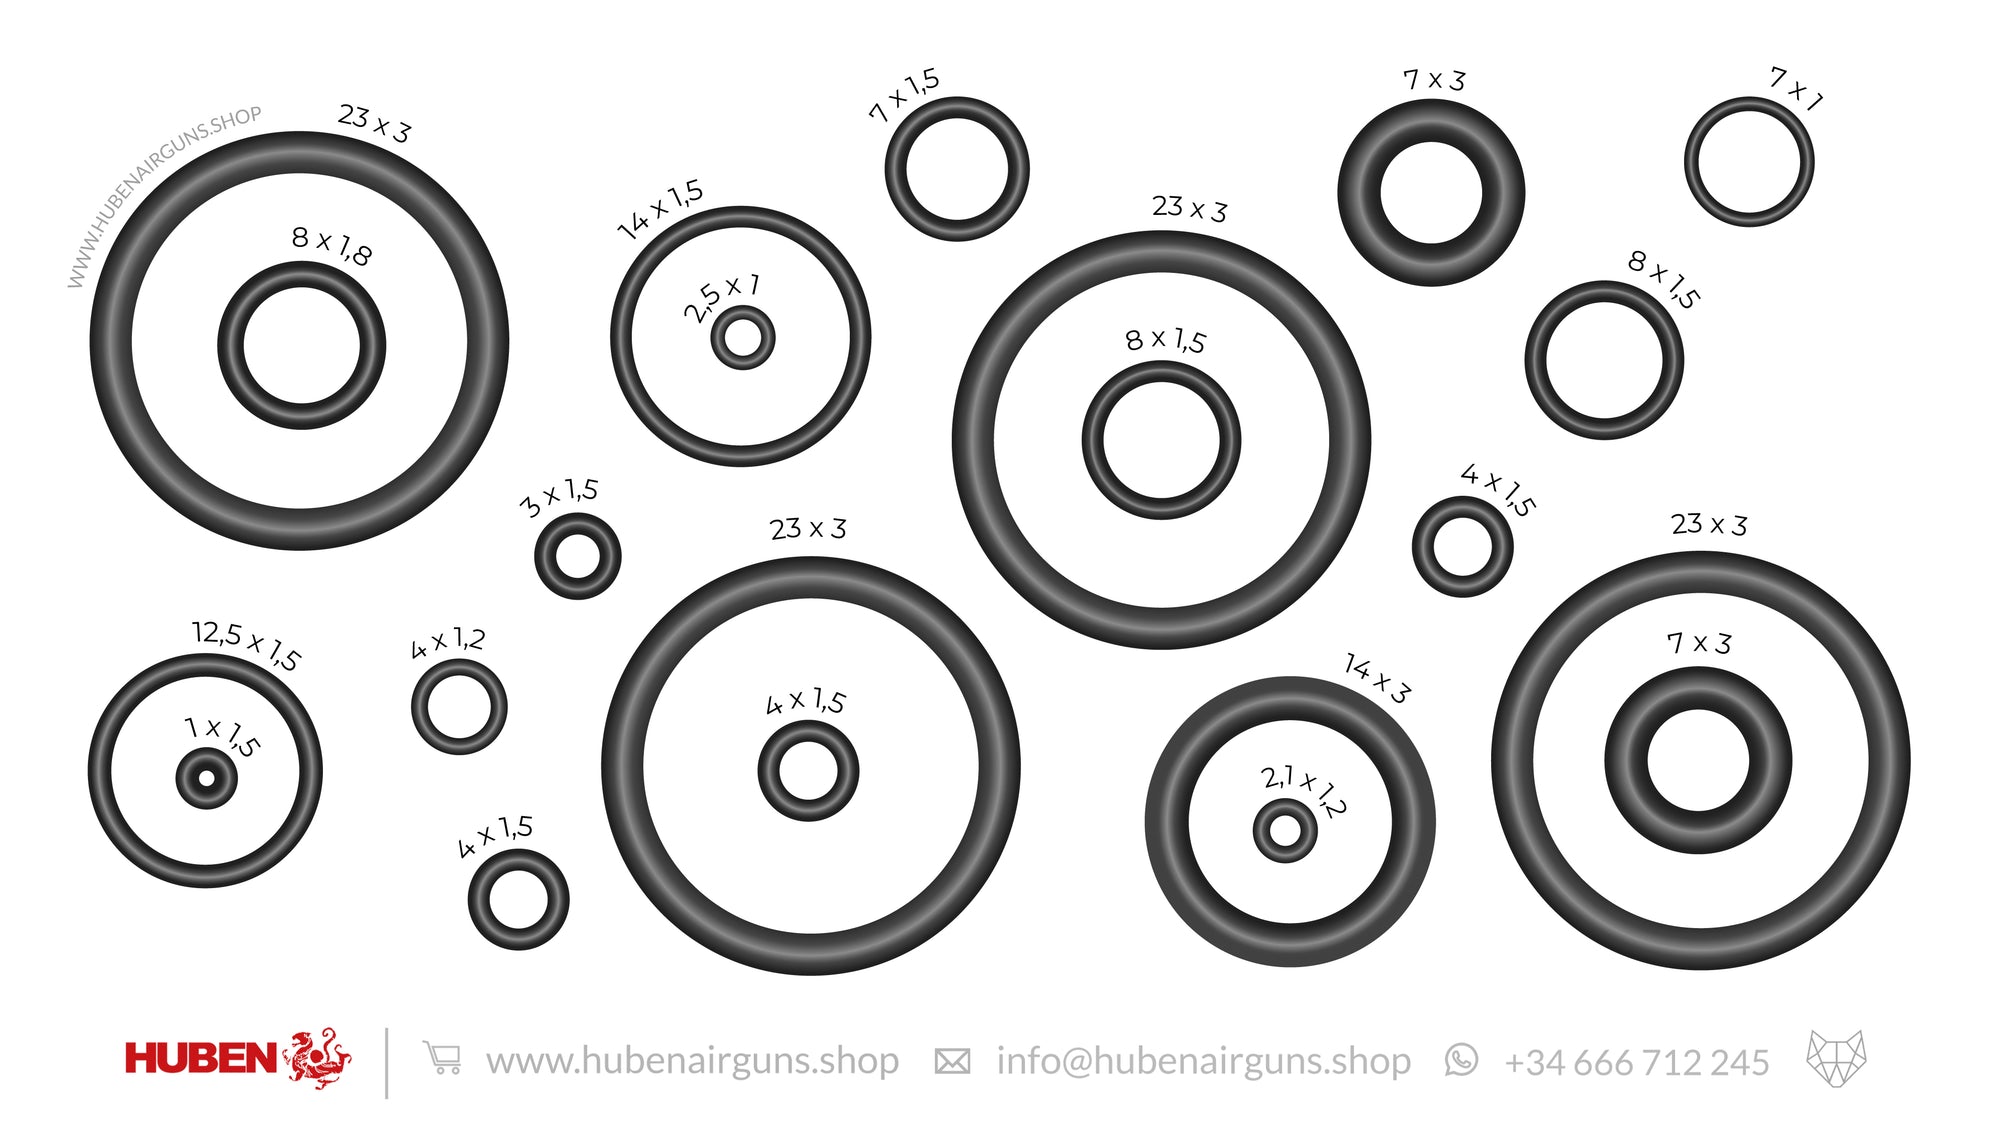 Huben complete O-rings kit